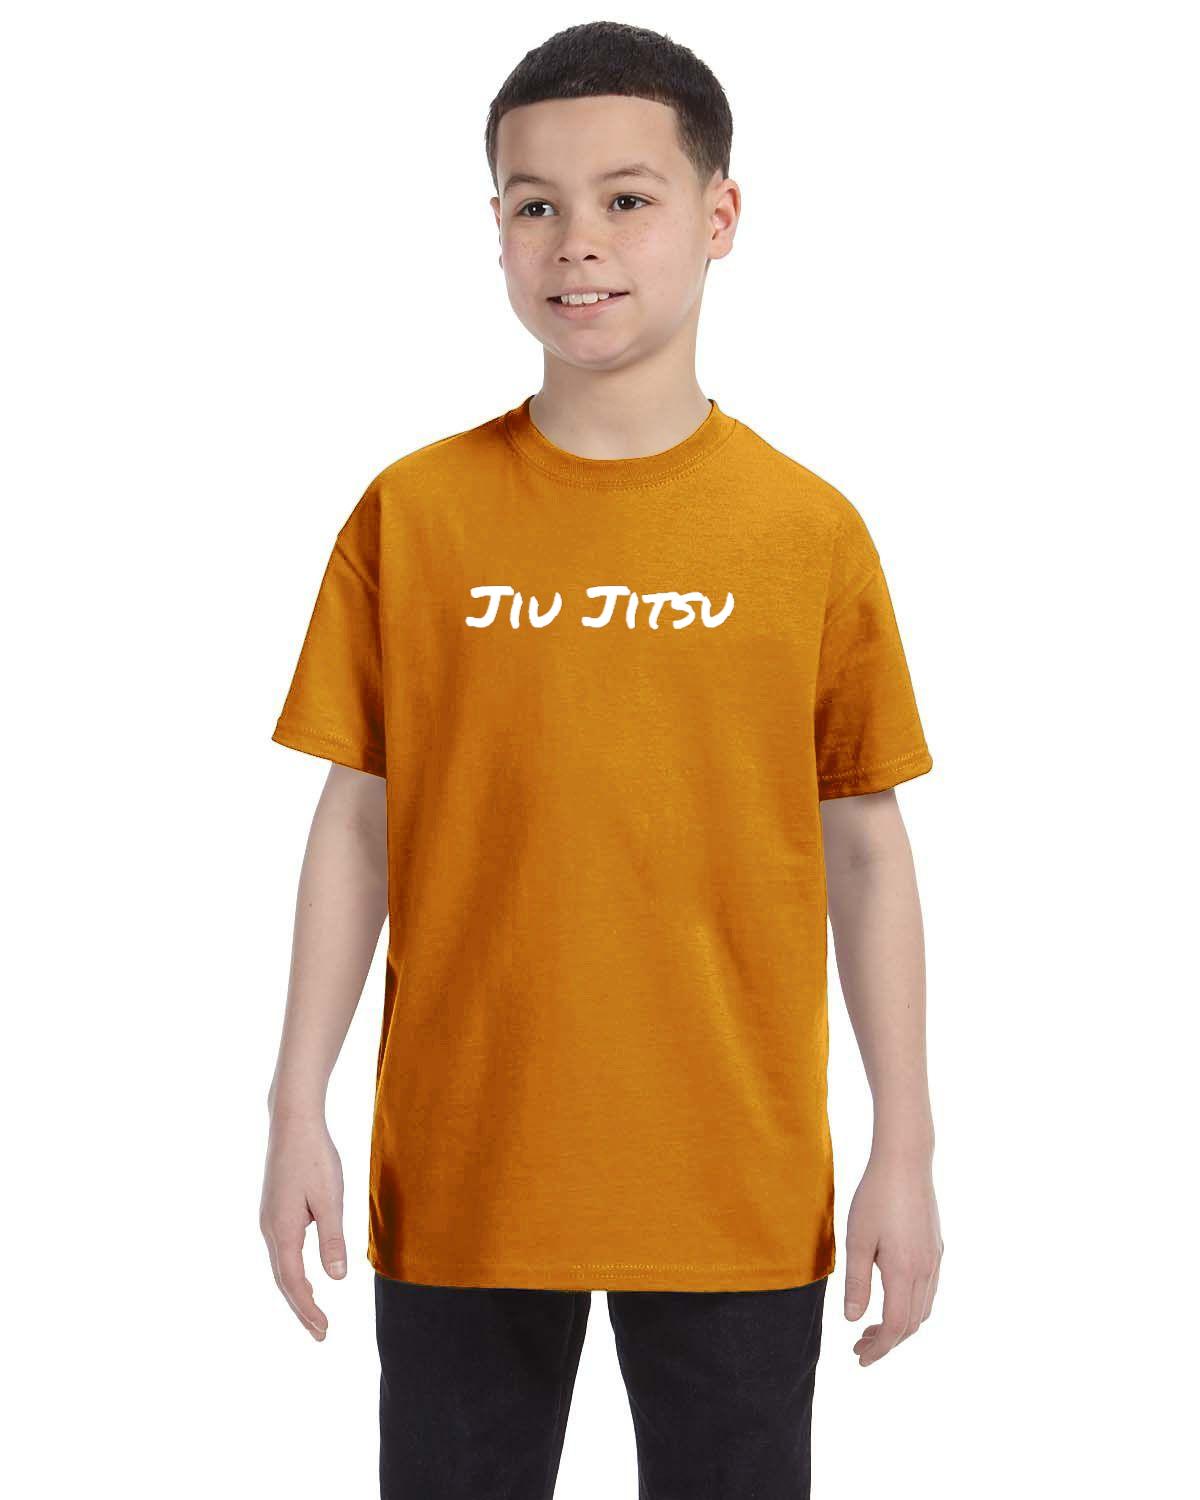 Jiu Jitsu Kids T-Shirt